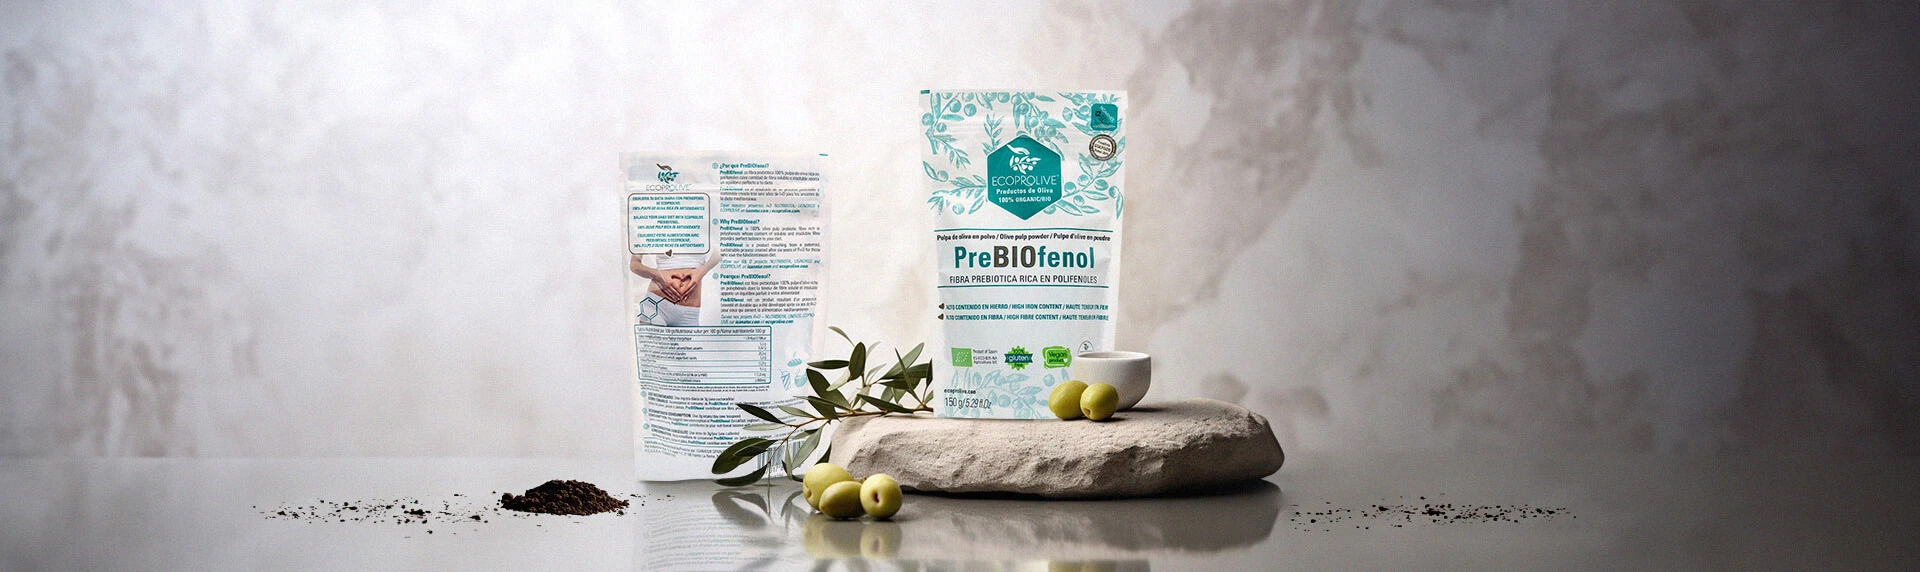 Prebiótico Antioxidantes Prebiótico de oliva Extracto prebiótico Fibra prebiótica Prebiótico natural Antienvejecimiento Antiinflamatorio Digestivo Macrobiota PREBIOFENOL